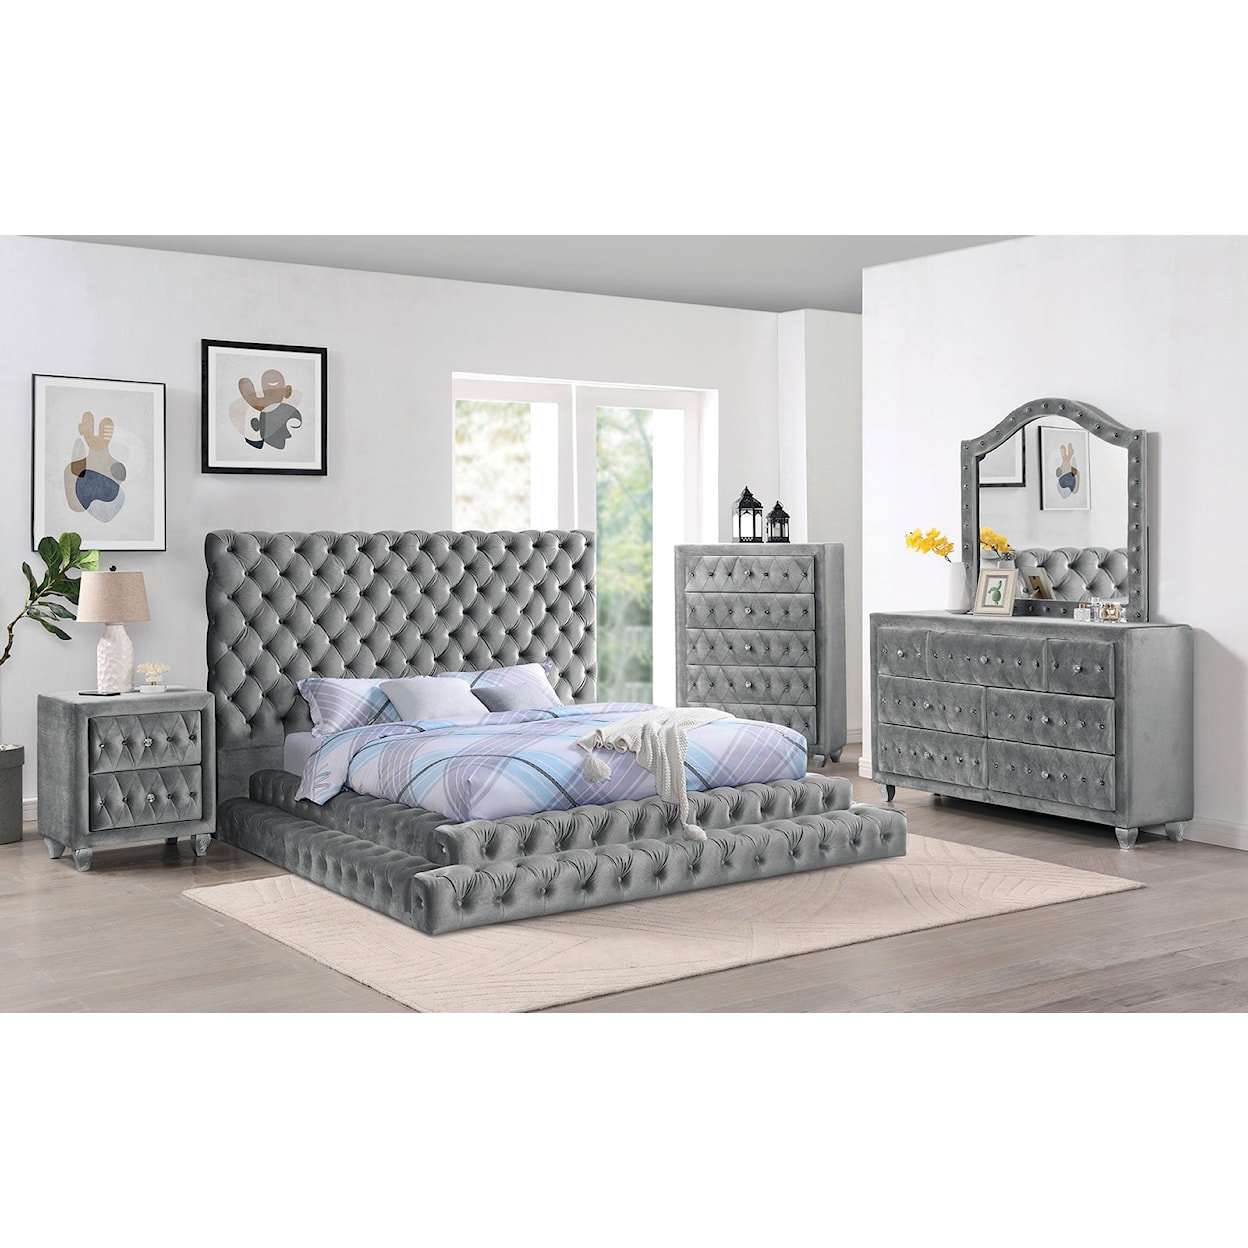 Furniture of America Stefania 4-Piece Queen Bedroom Set